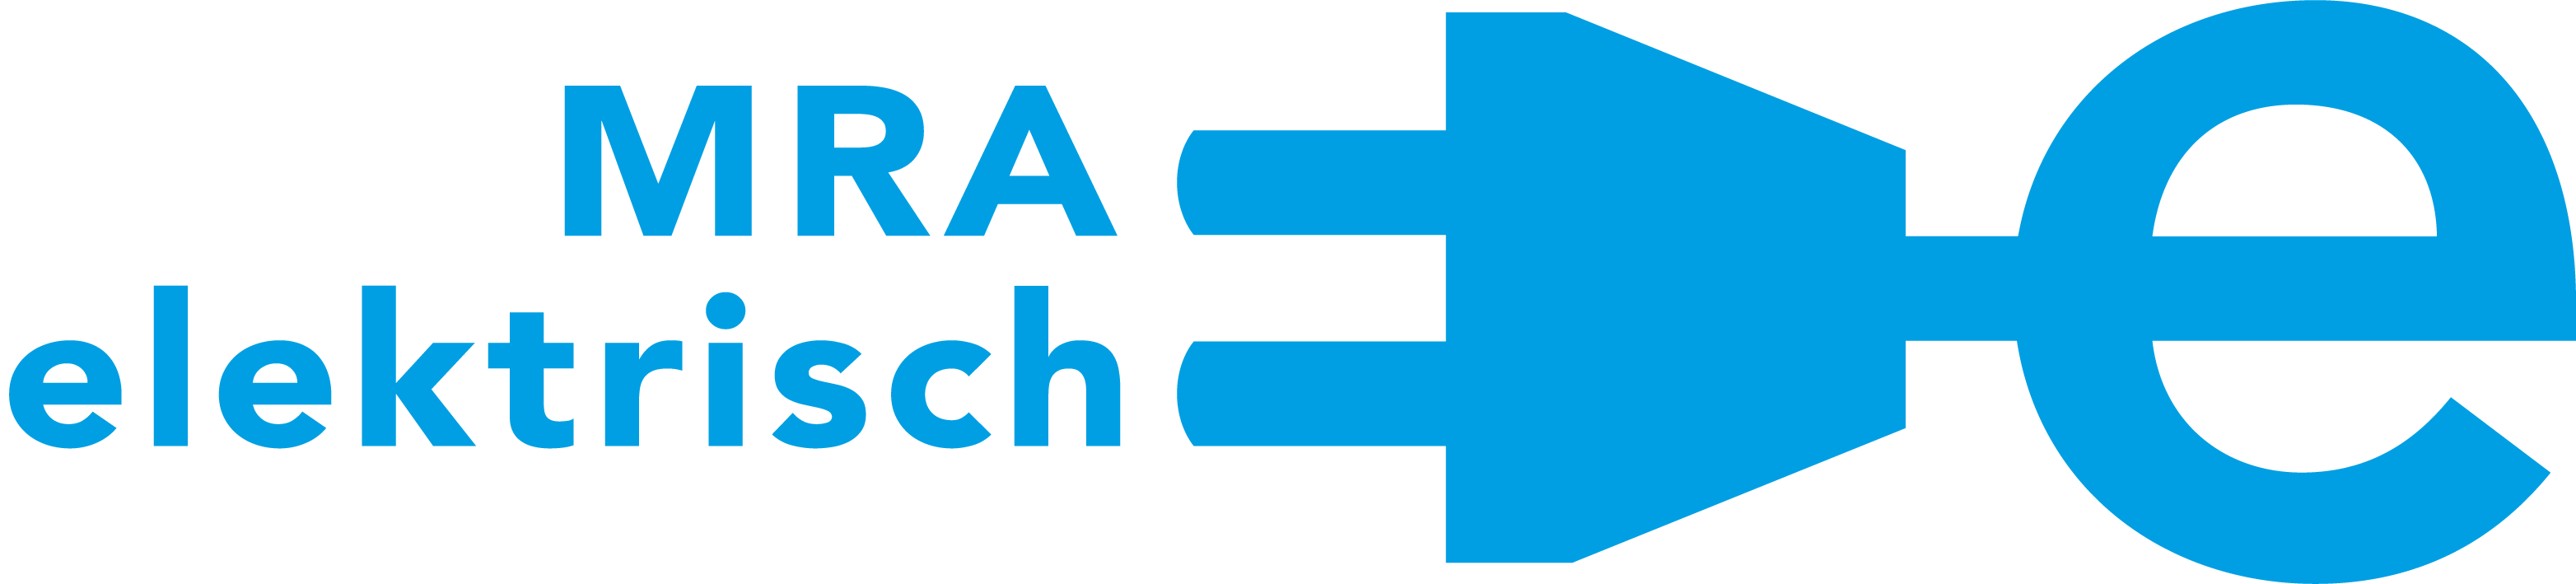 Logo MRA elektrisch